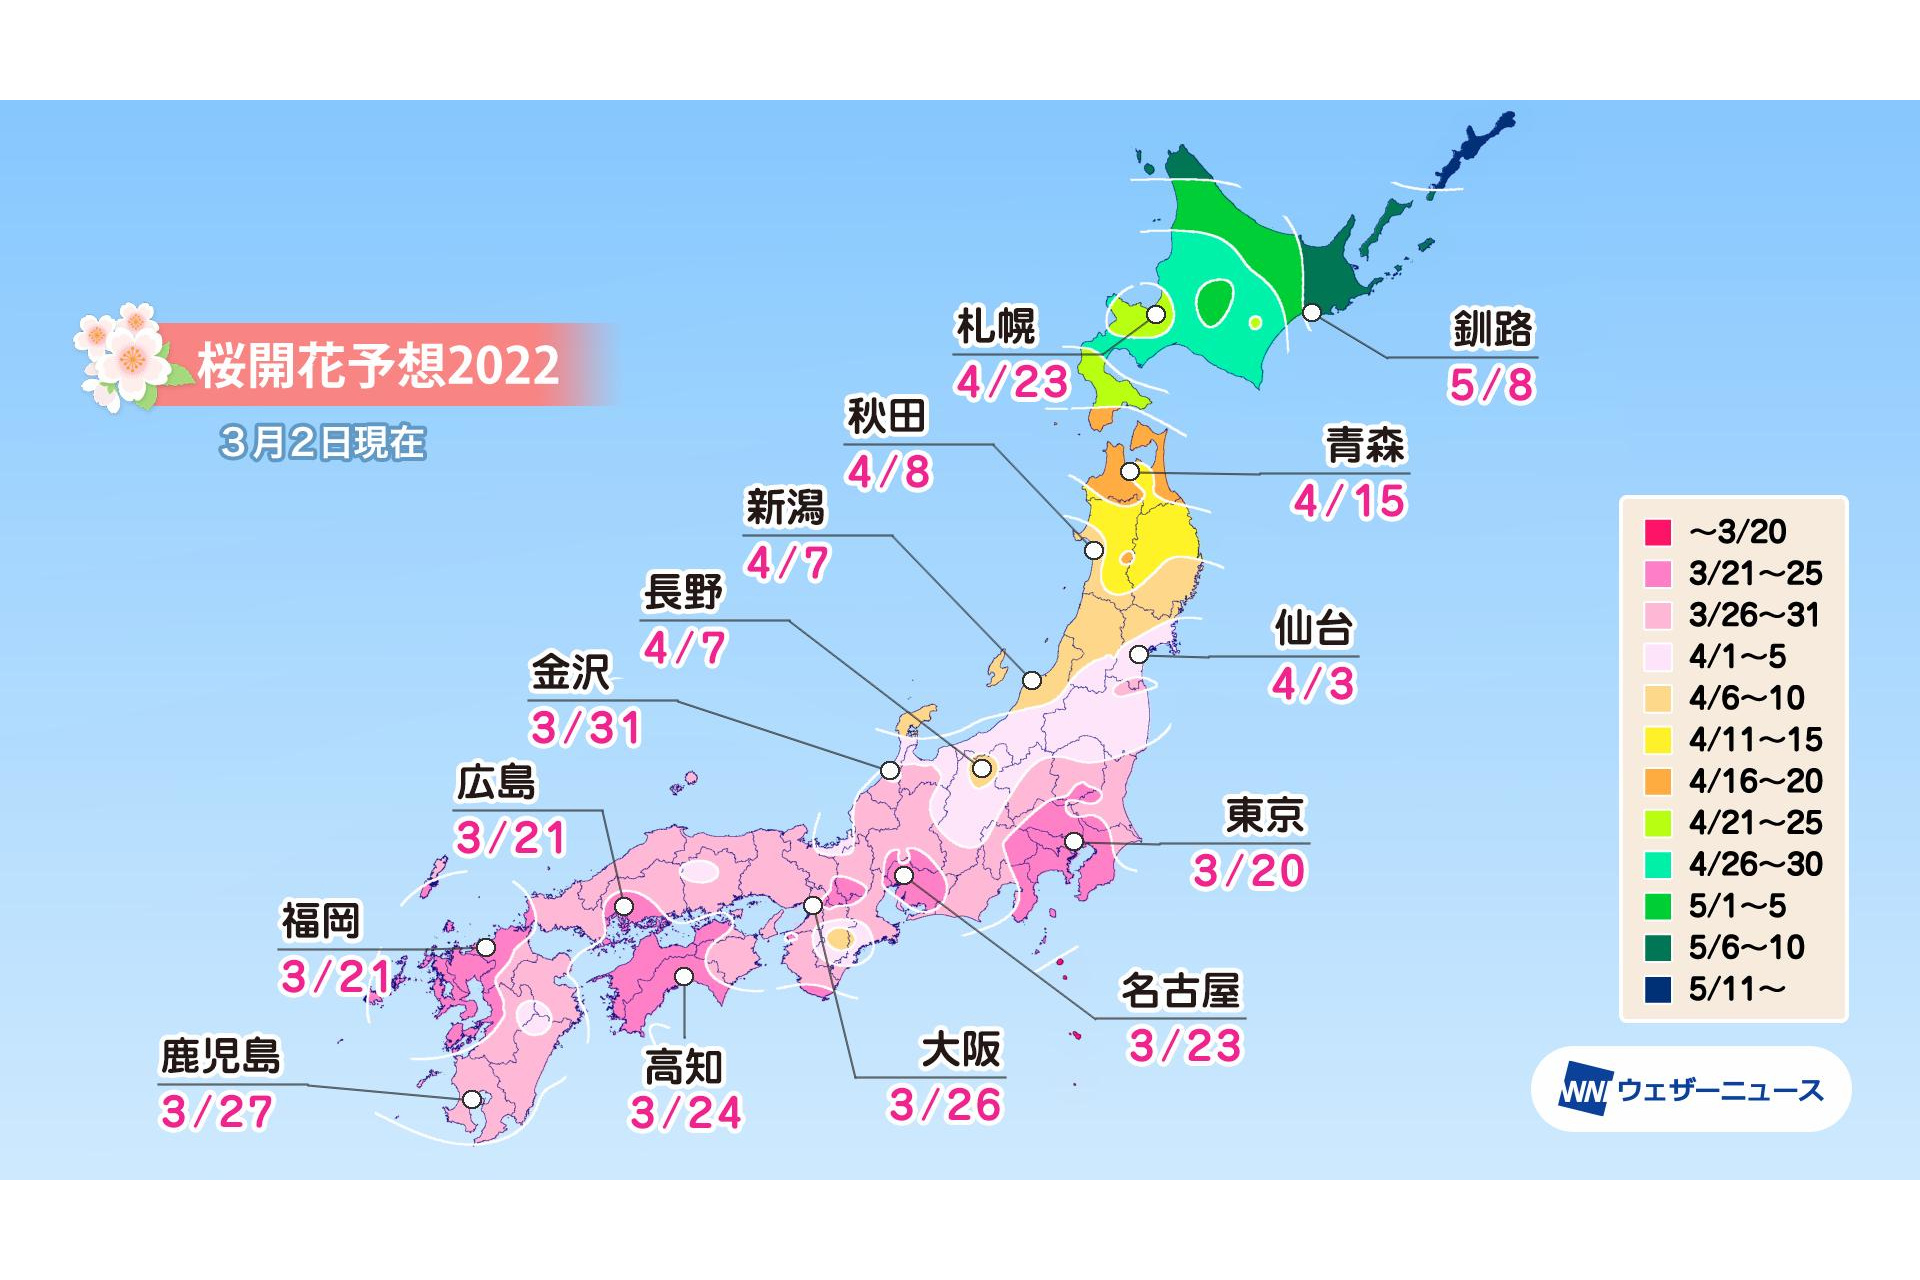 桜開花は3月20日の東京から、西・東日本は平年並。ウェザーニューズ